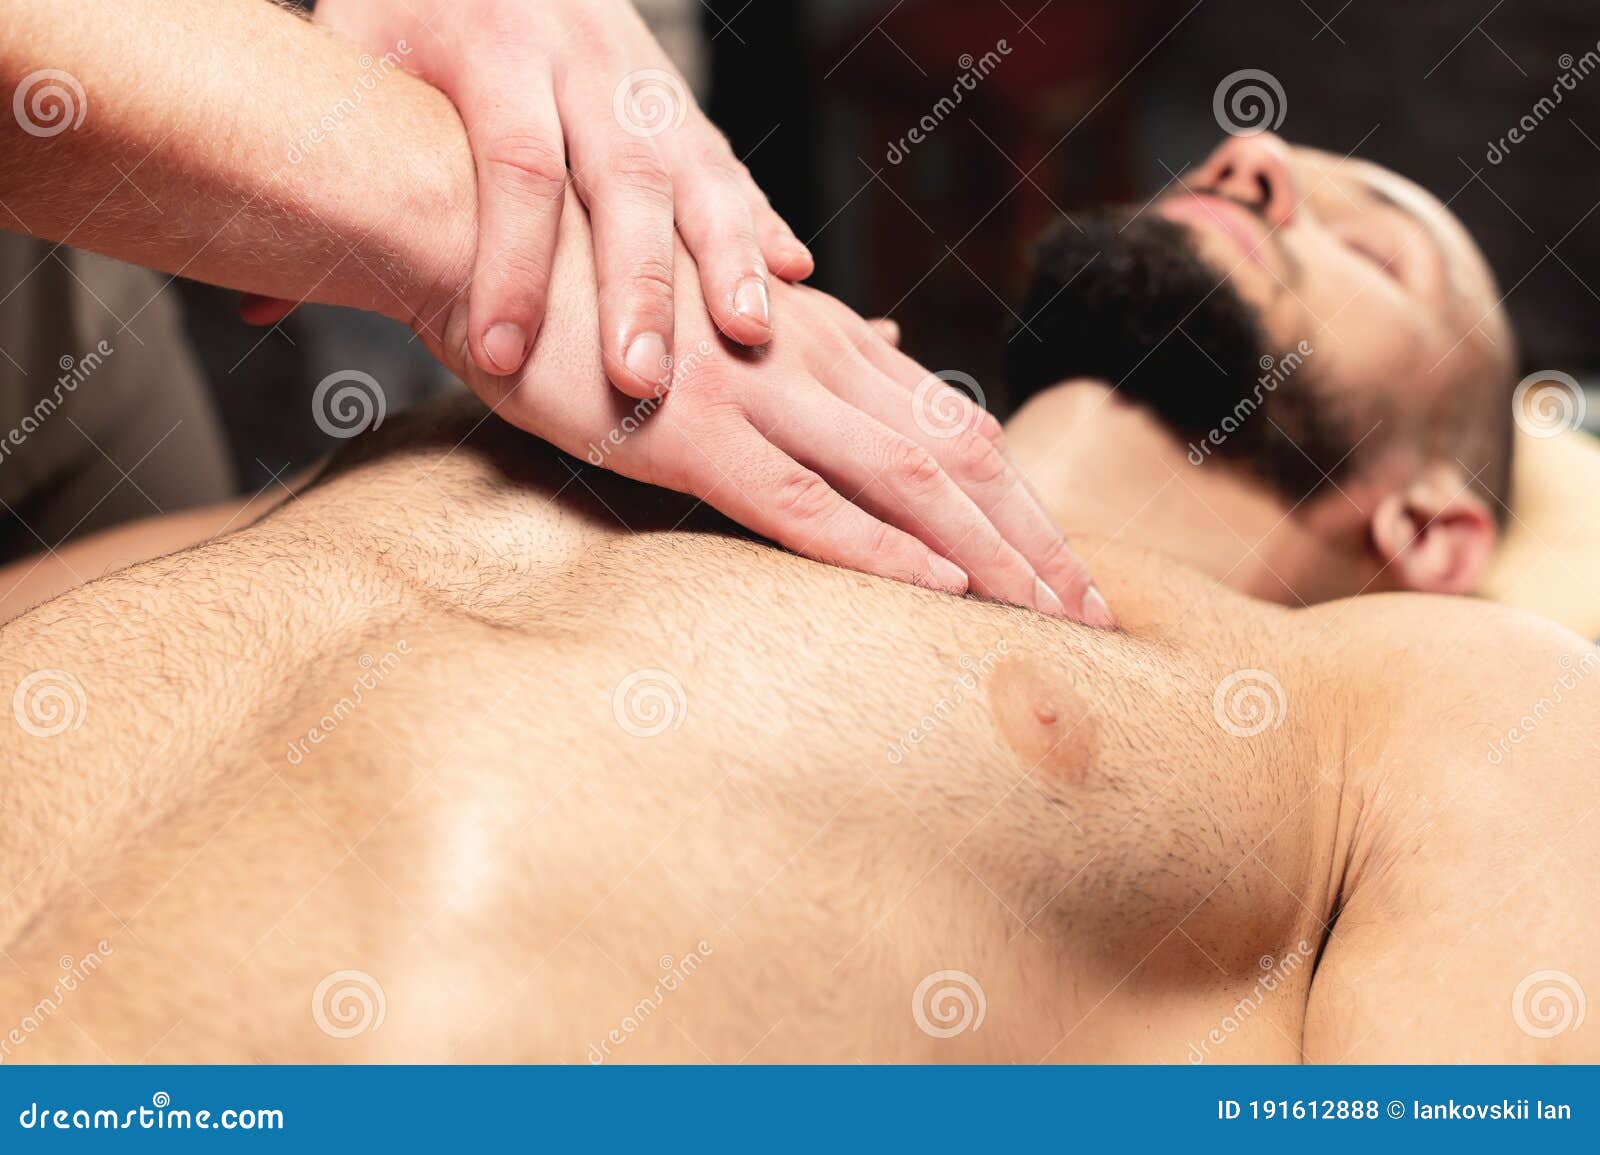 массаж грудью мужчин фото 55